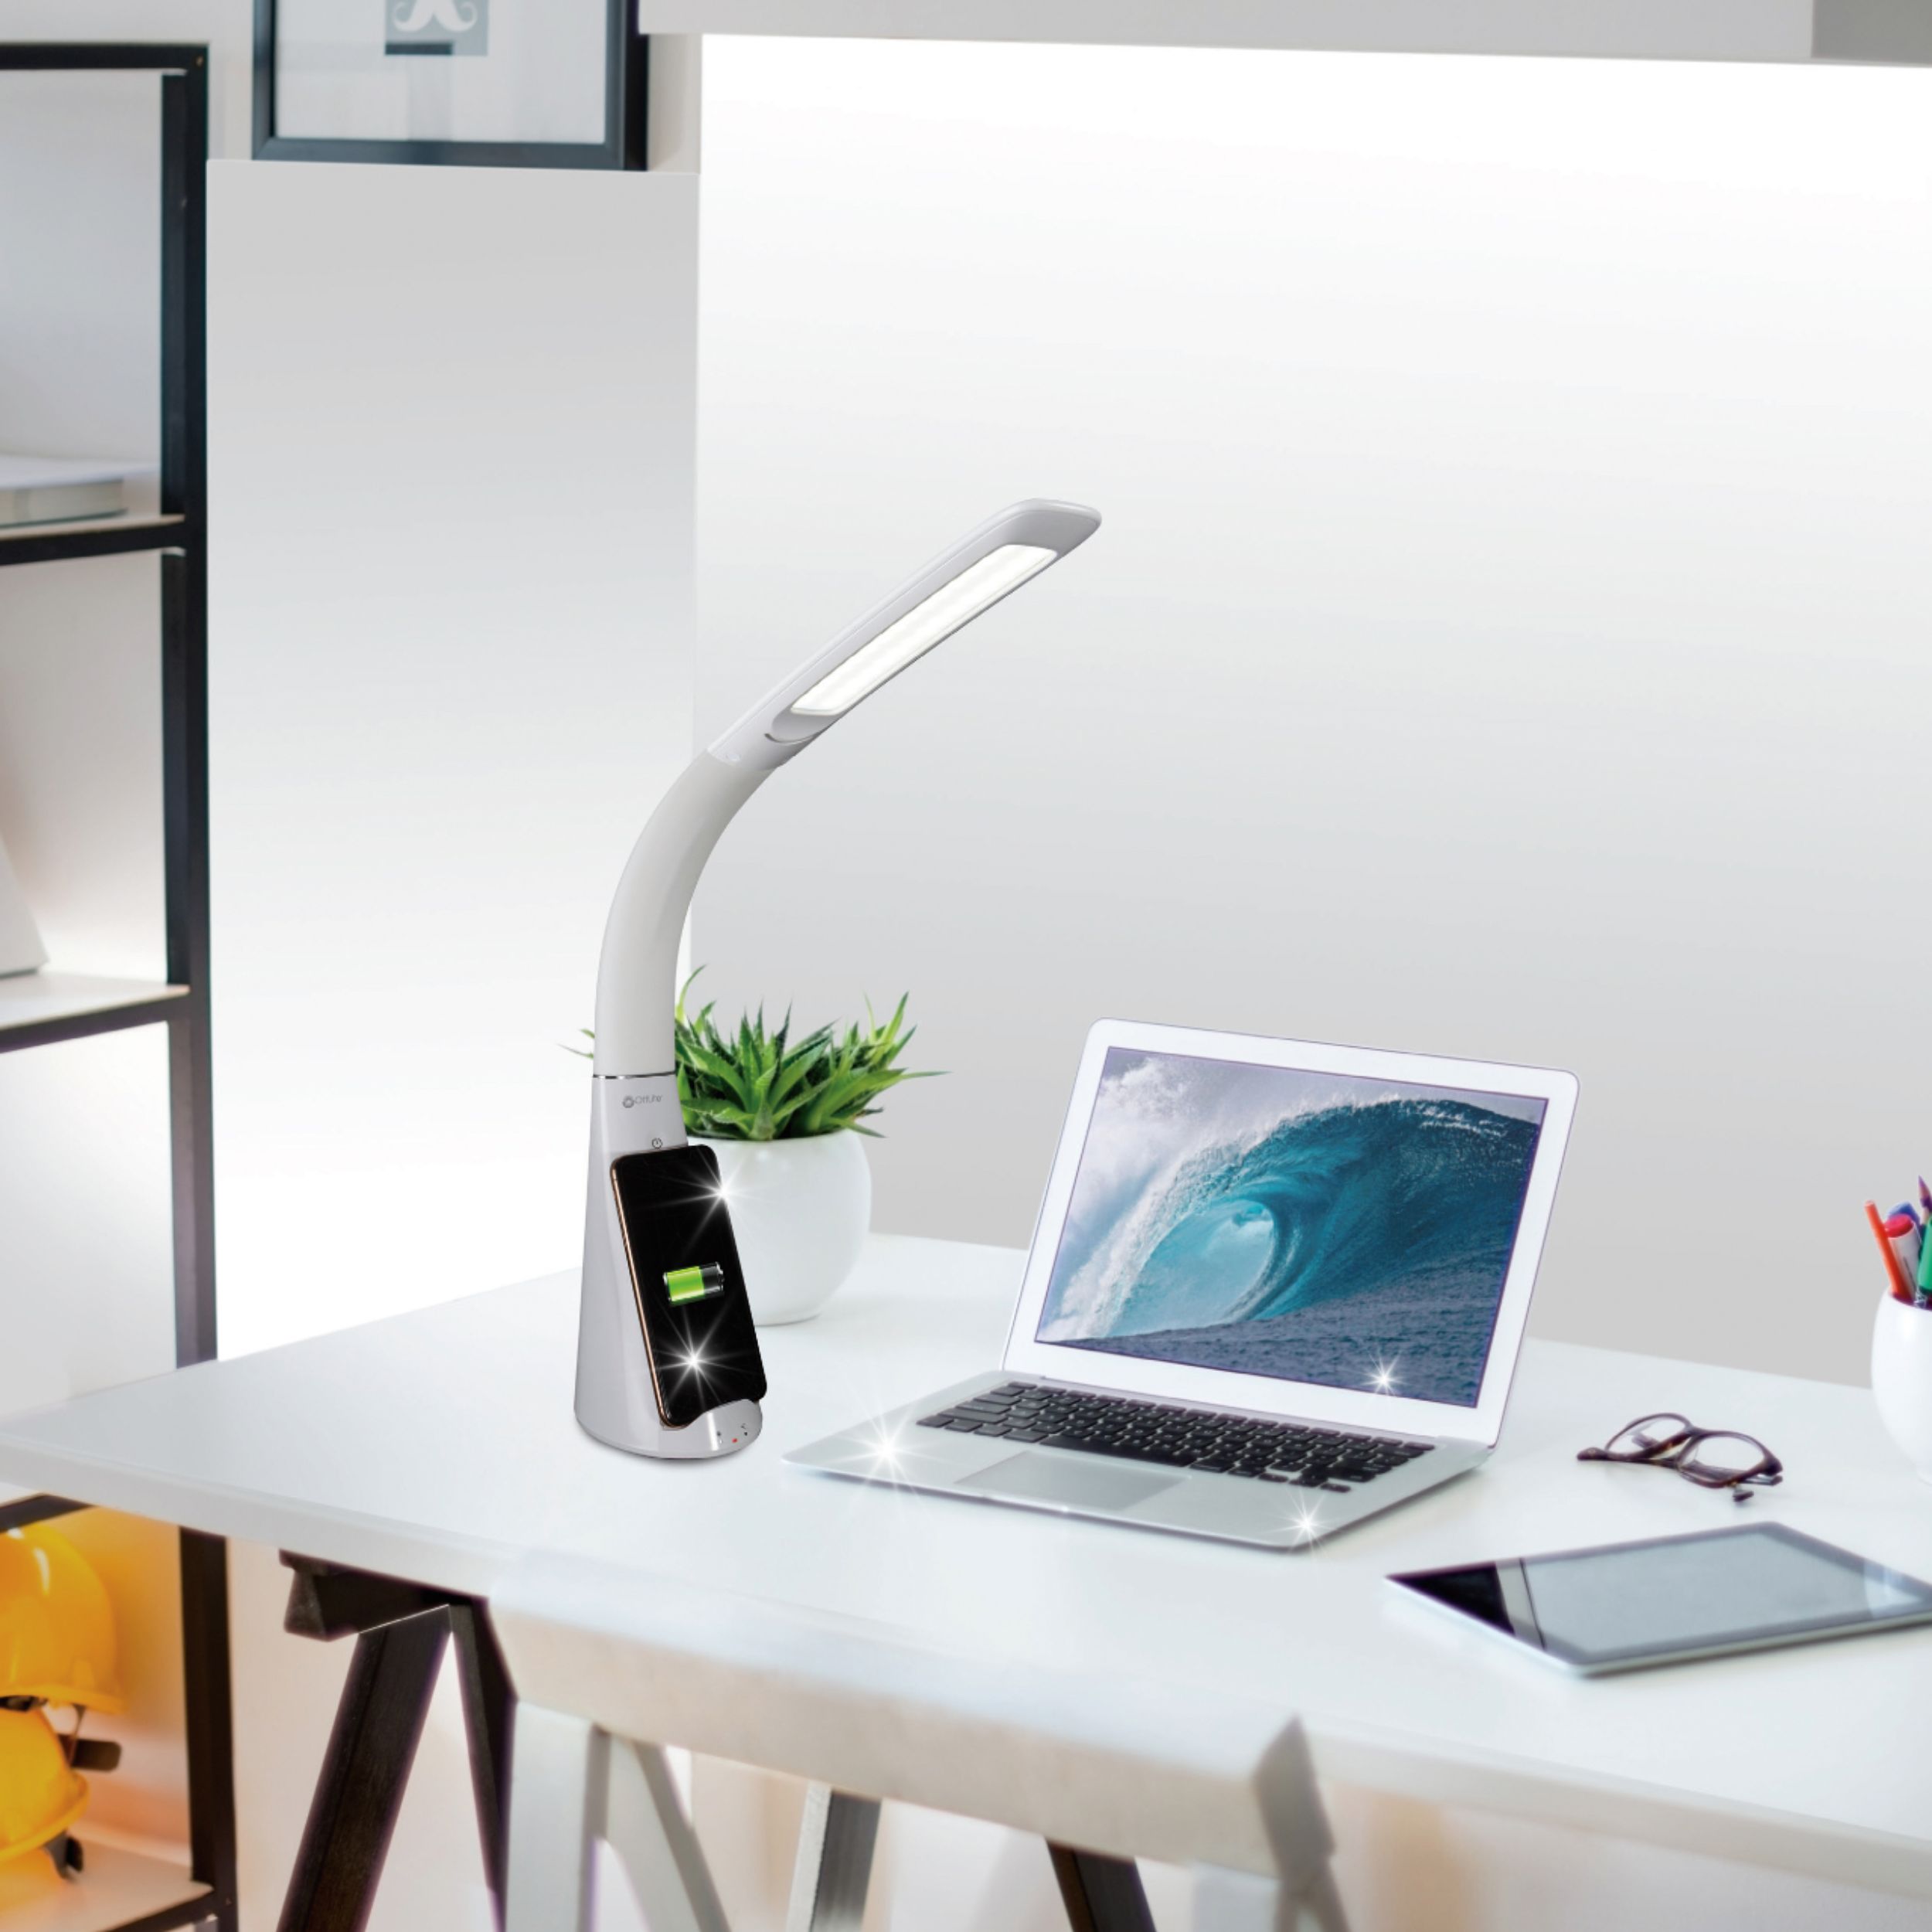 Enhance LED Sanitizing Desk Lamp with USB Charging